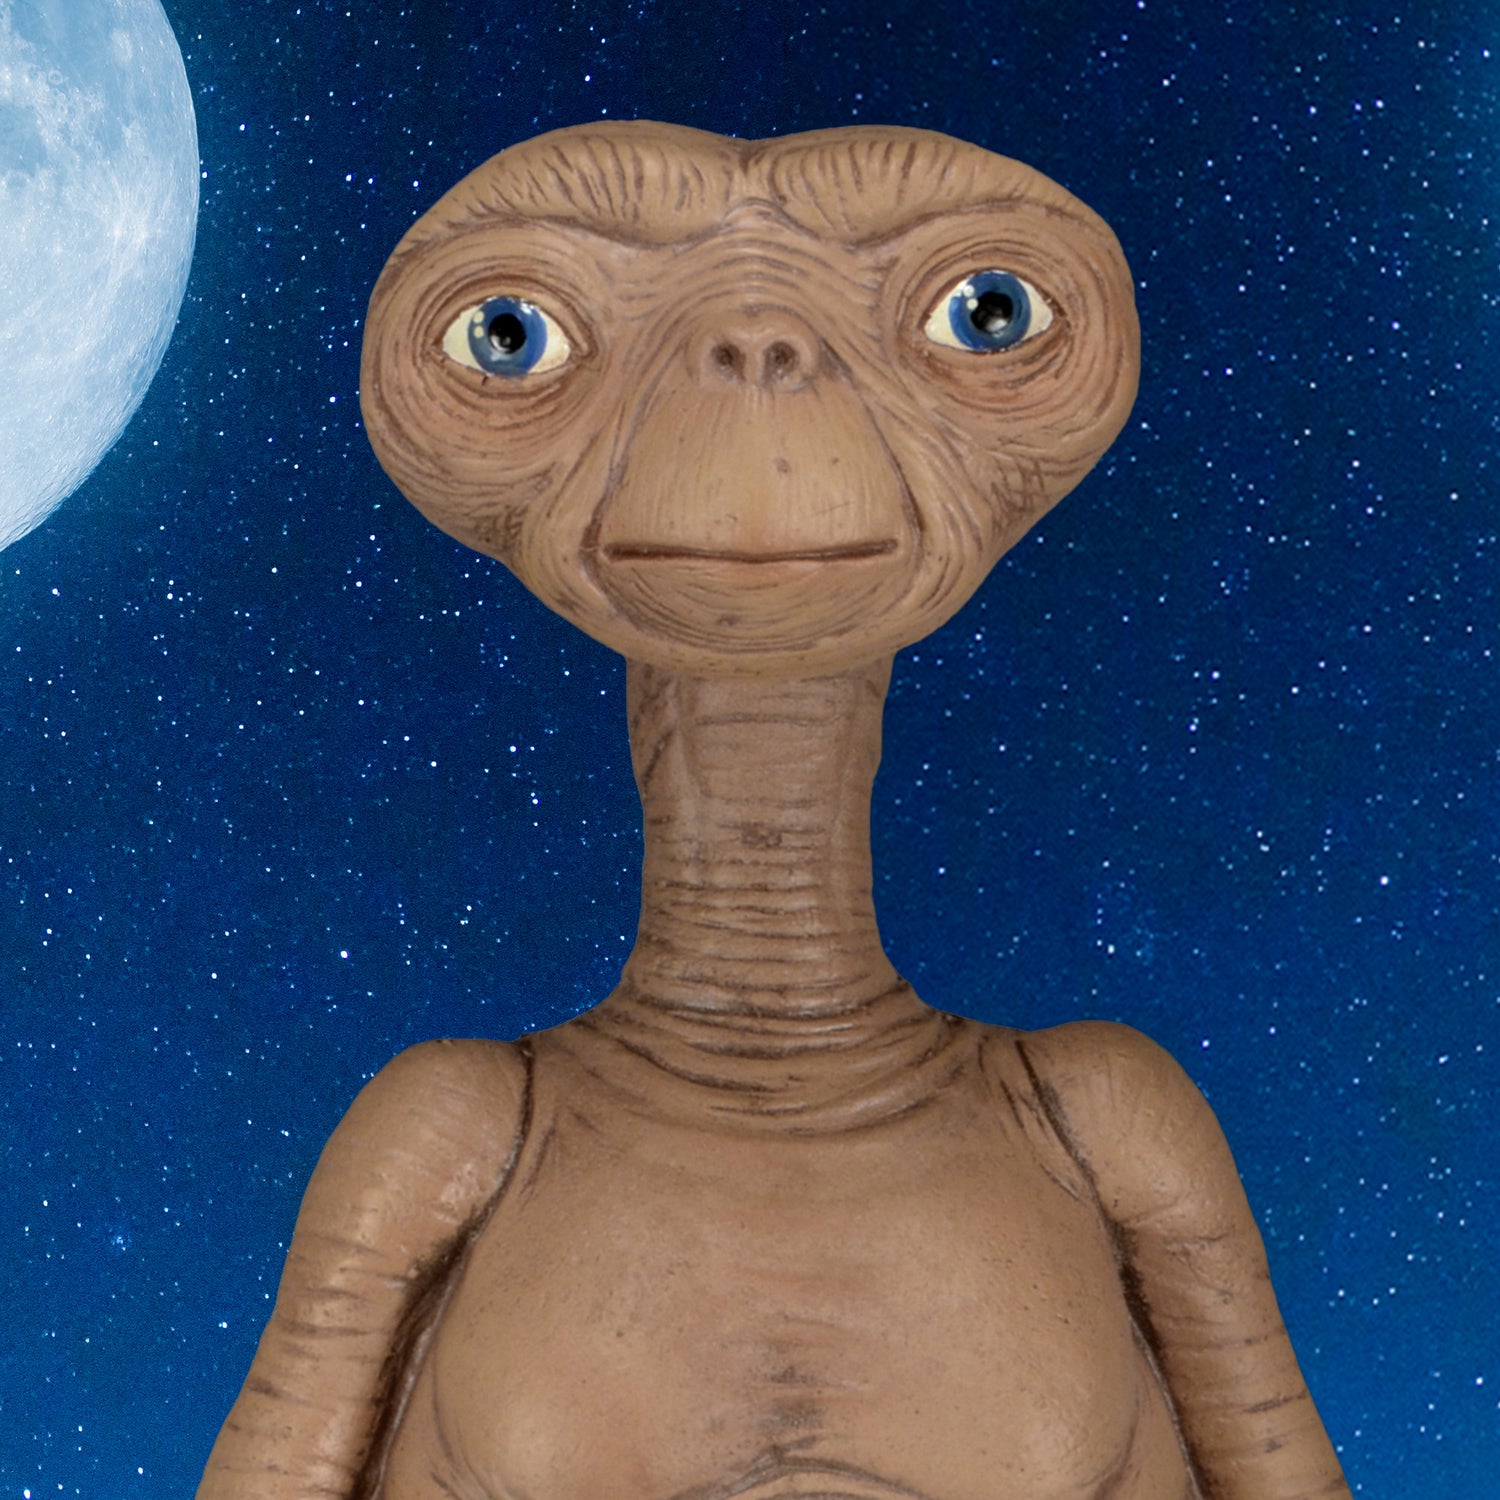 Close-up of E.T. Prop Replica 12” Foam Figure against a night sky